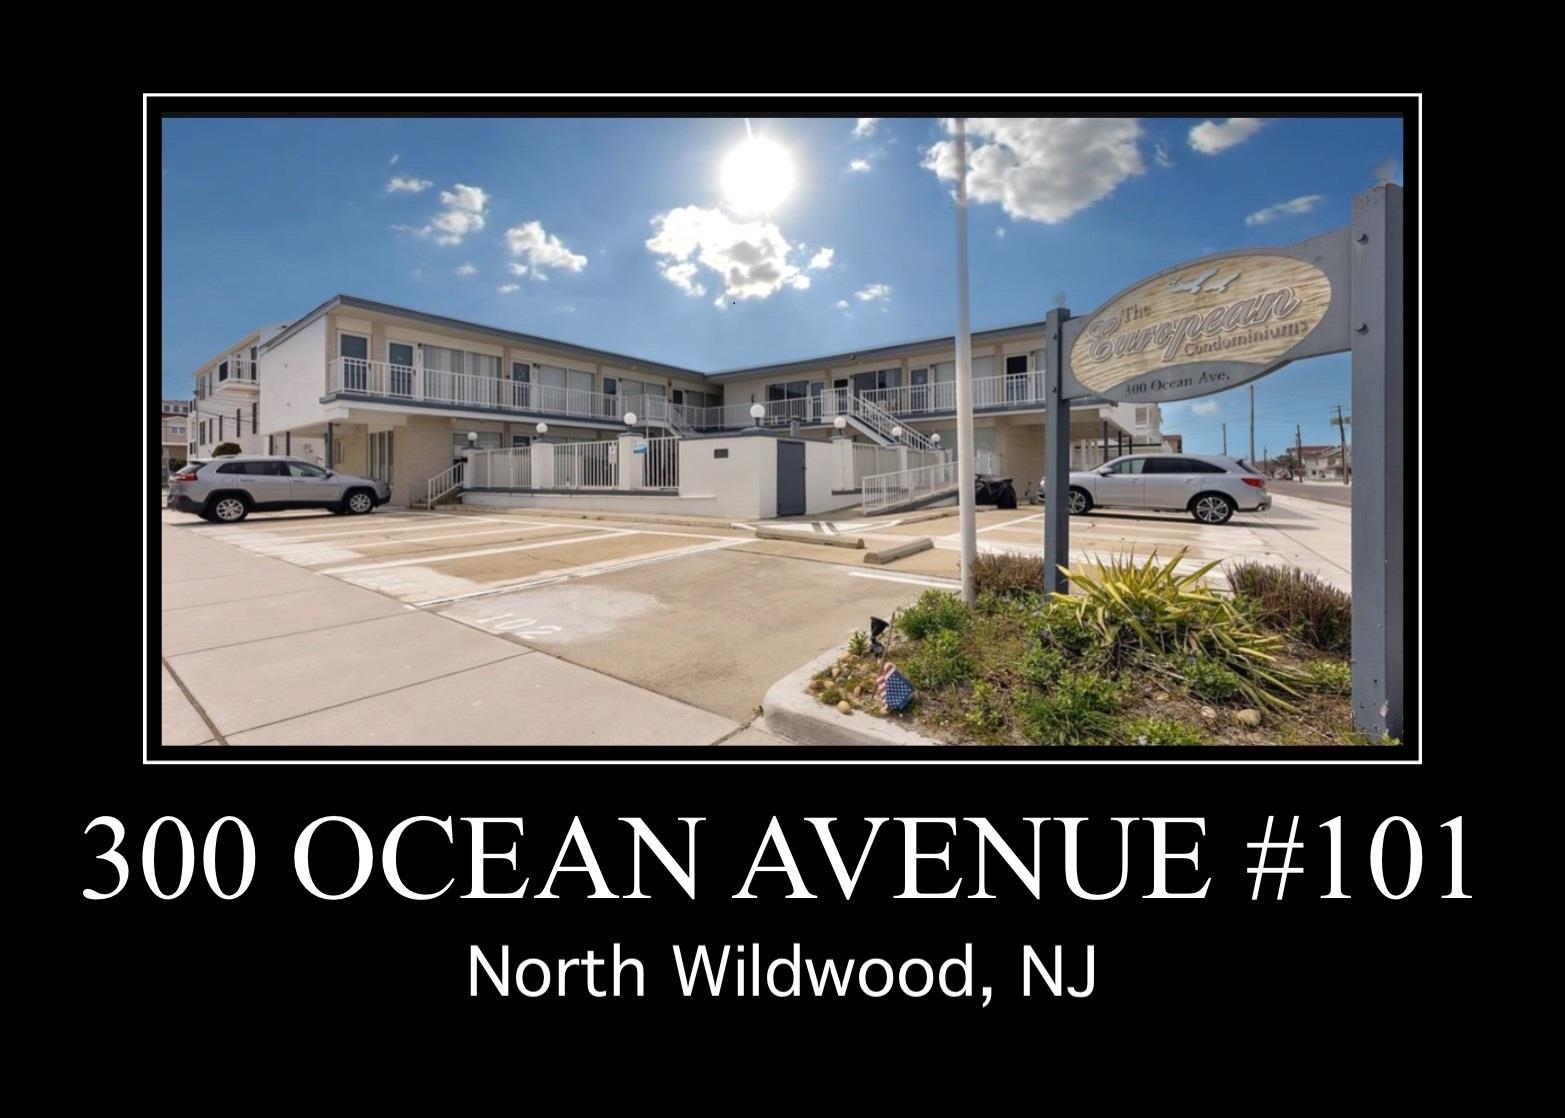 300 Ocean Avenue - North Wildwood